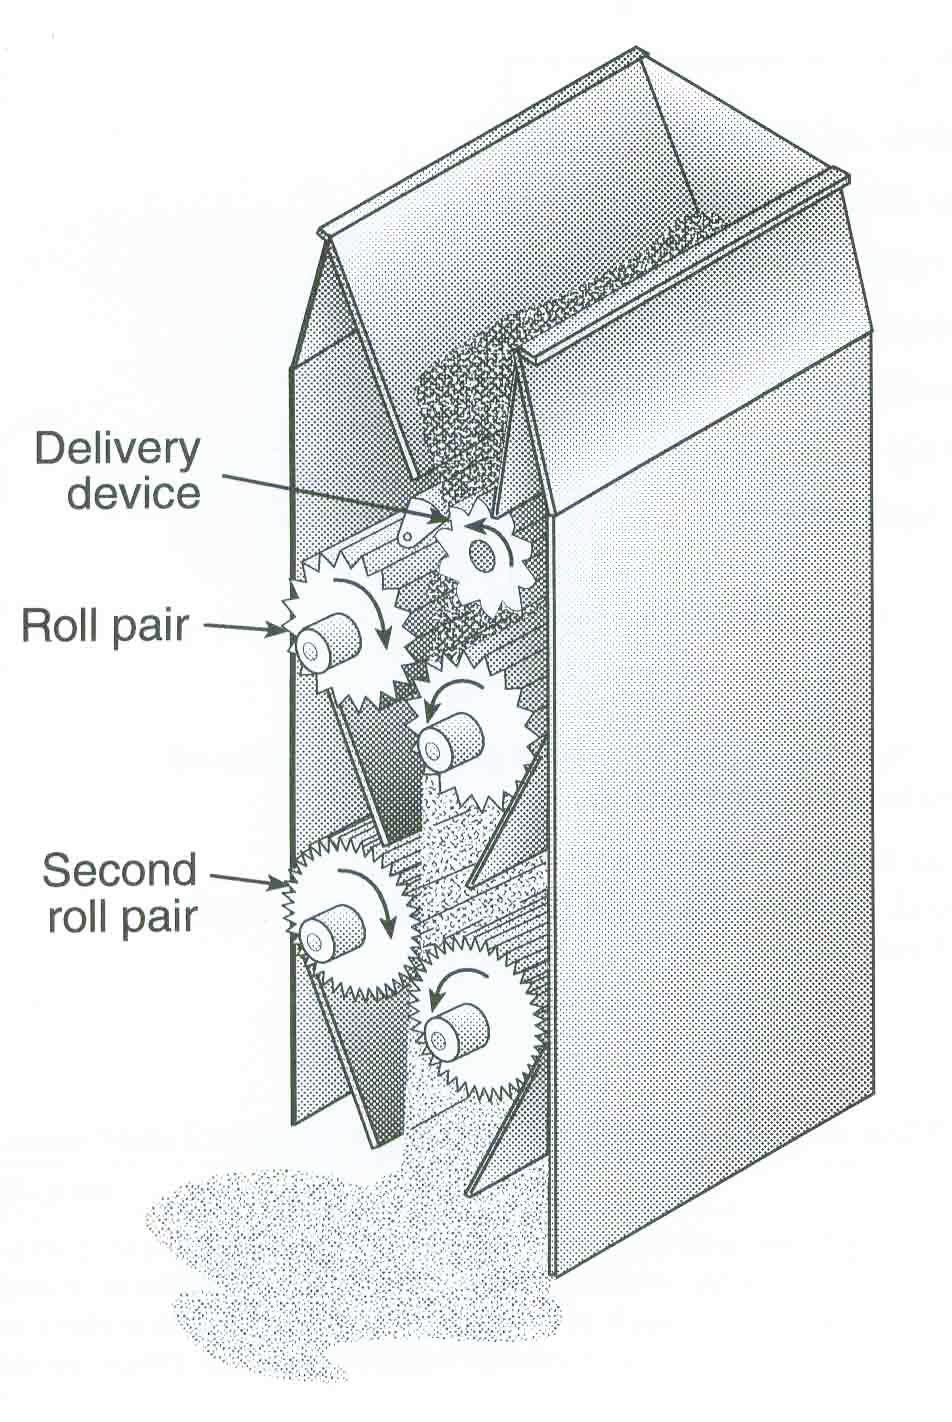 material between rolls.